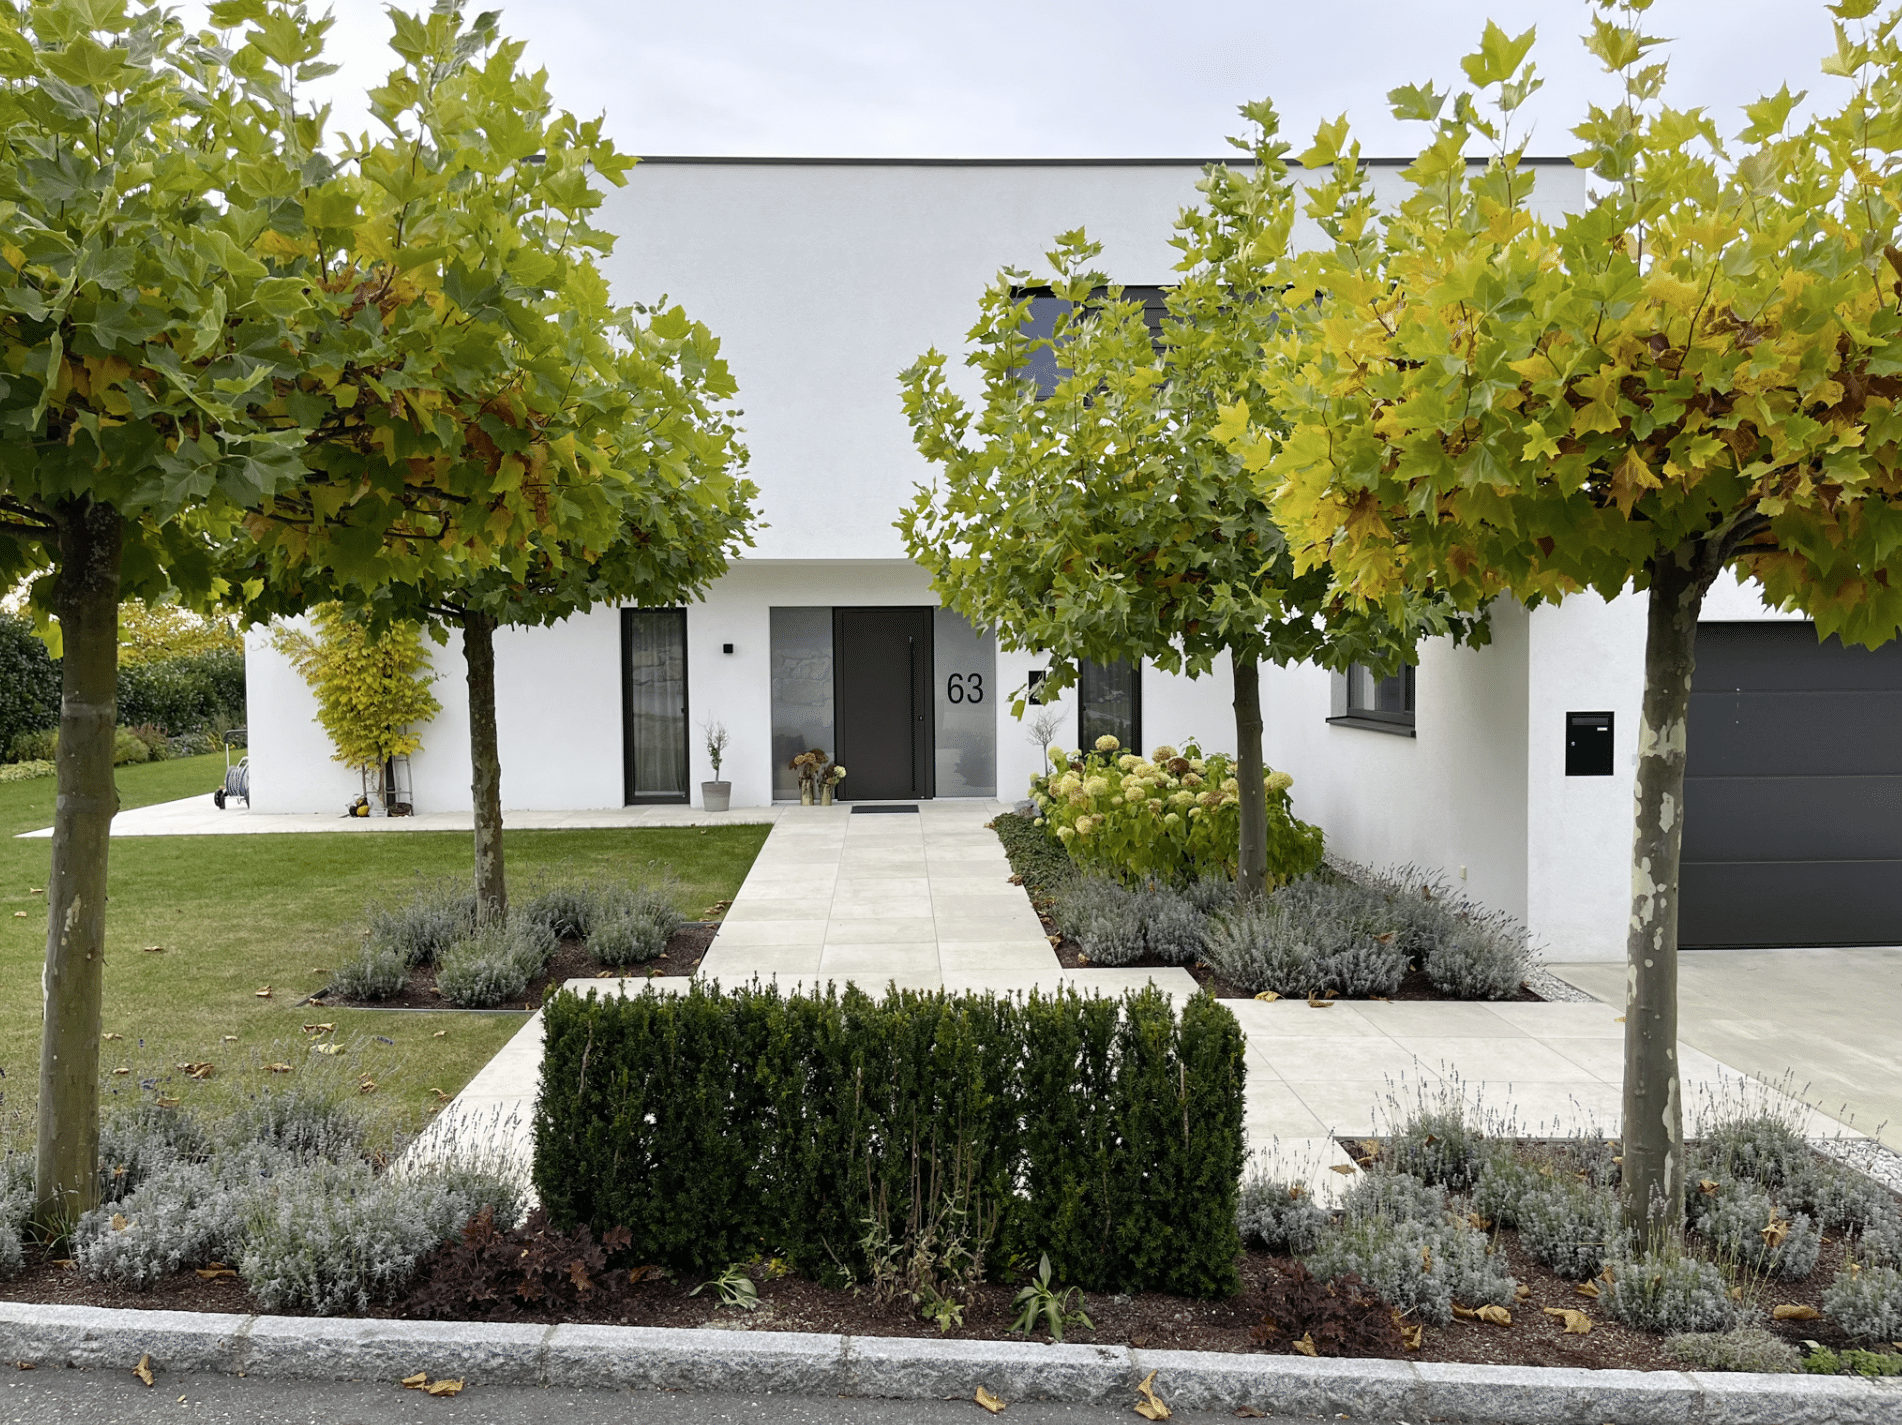 Gartenbau Schmid zeigt den Vorhof eines sehr modernen weißen Hauses mit Steinplatten, bunt bepflanzten Blumenbeeten und hohen Ahornbäumen.